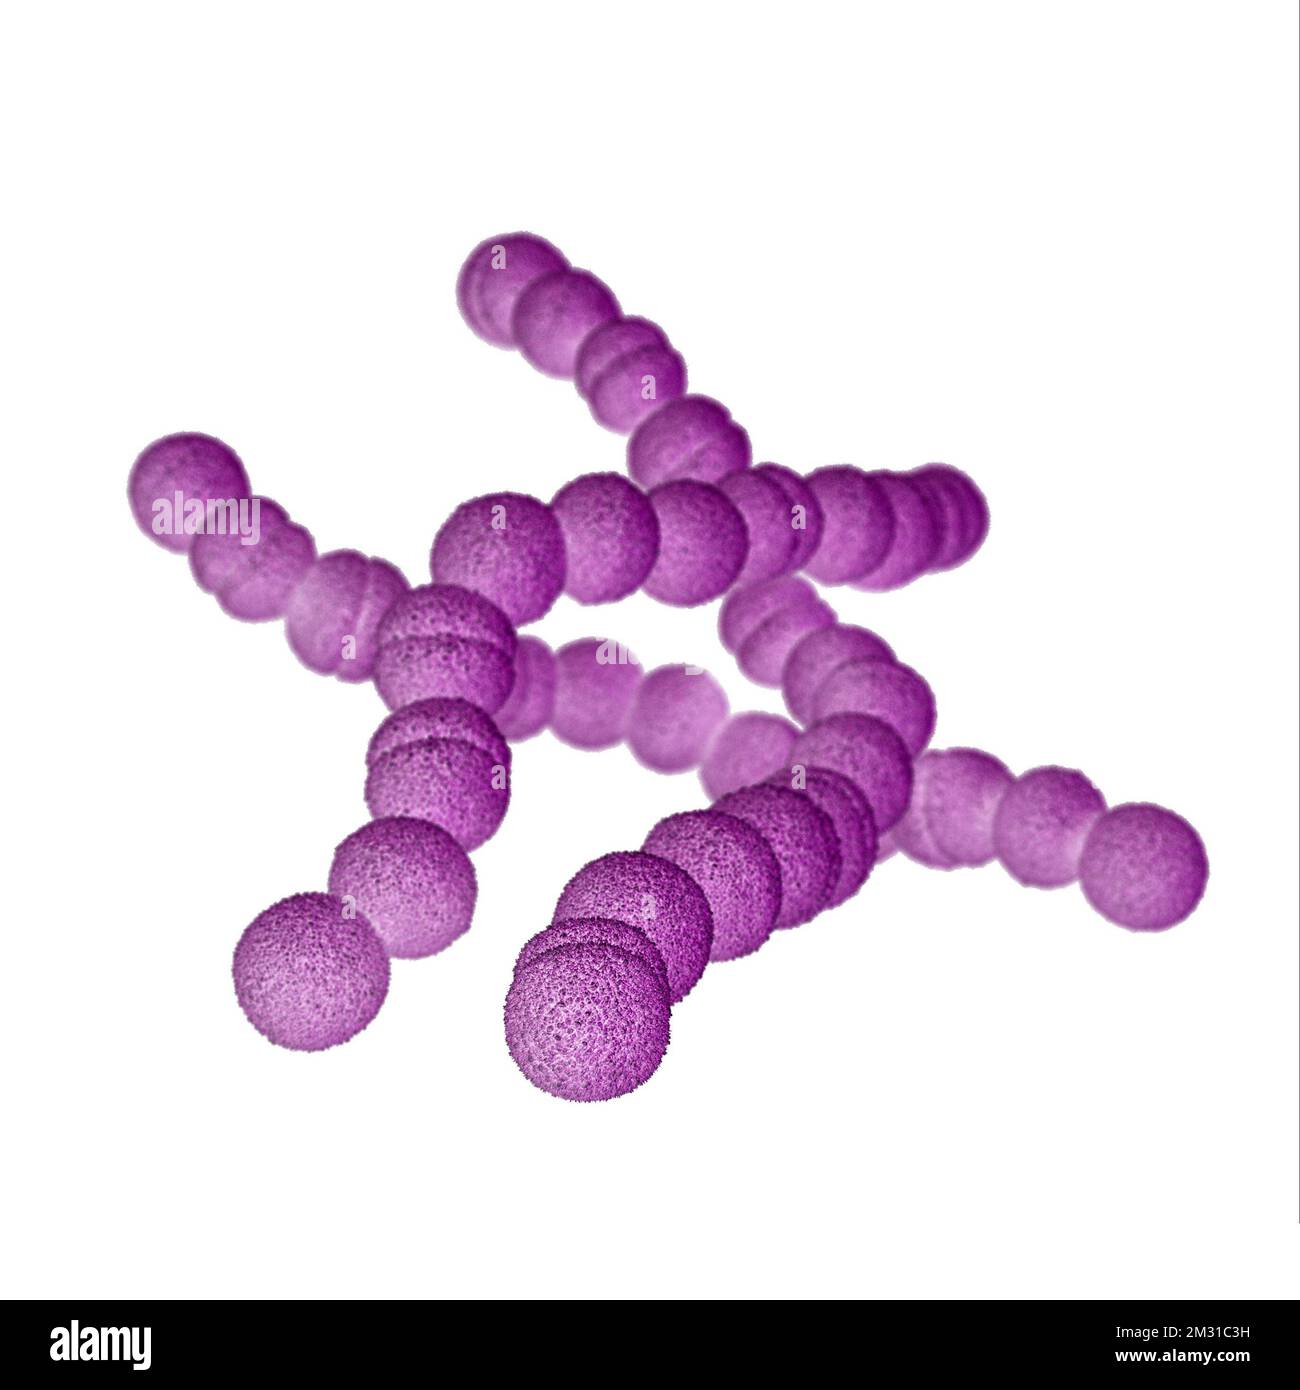 Streptokokkenbakterien der Gruppe A. STREP A Streptococcus pyogenes ist eine Art von grampositiven, aerotoleranten Bakterien der Gattung Streptococcus. Diese Bakterien sind extrazellulär und bestehen aus nicht beweglichen und nicht sporierenden Kokken, die dazu neigen, sich in Ketten zu verbinden. Diese Abbildung zeigt ein computergeneriertes 3D-Bild einer Gruppe von Gram-positiven Streptococcus pyogenes (Streptococcus-Bakterien der Gruppe A). Die Visualisierung basierte auf rasterelektronenmikroskopischen (SEM) Bildern. Optimierte Version eines Bildes, das von den US Centers for Disease Control and Prevention / credit CDC /J.Oosthuizen produziert wurde Stockfoto